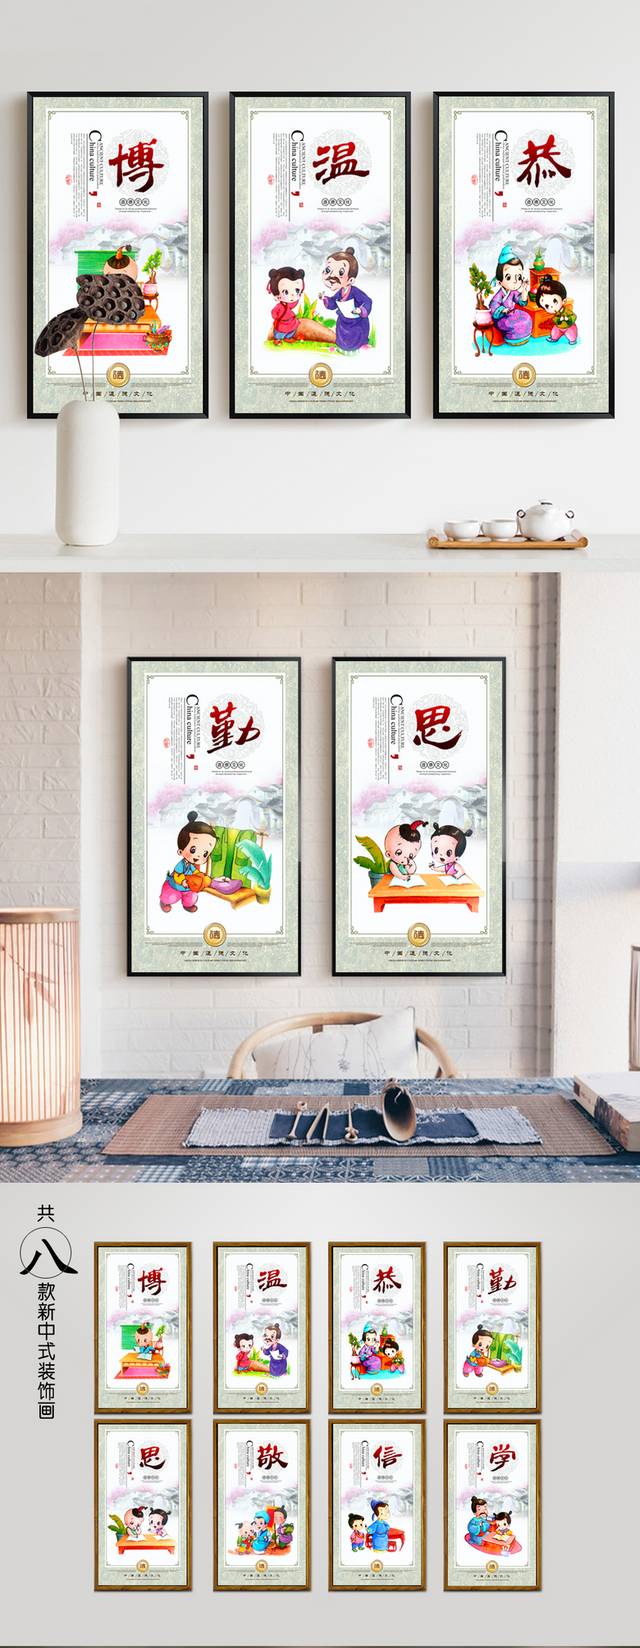 中华传统道德文化挂画设计